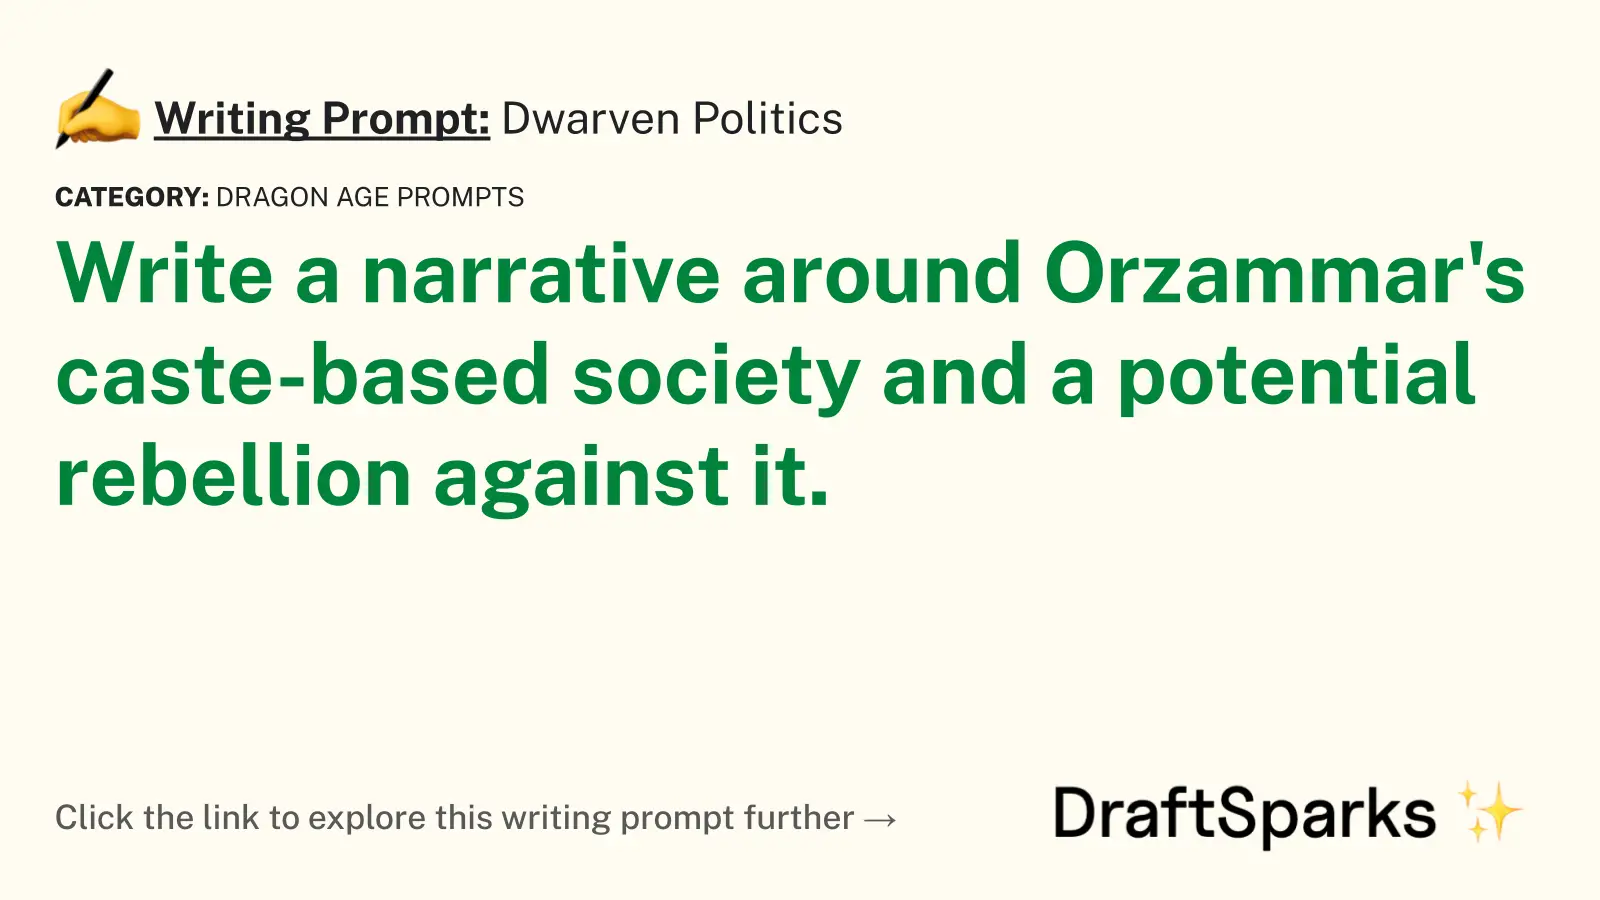 Dwarven Politics